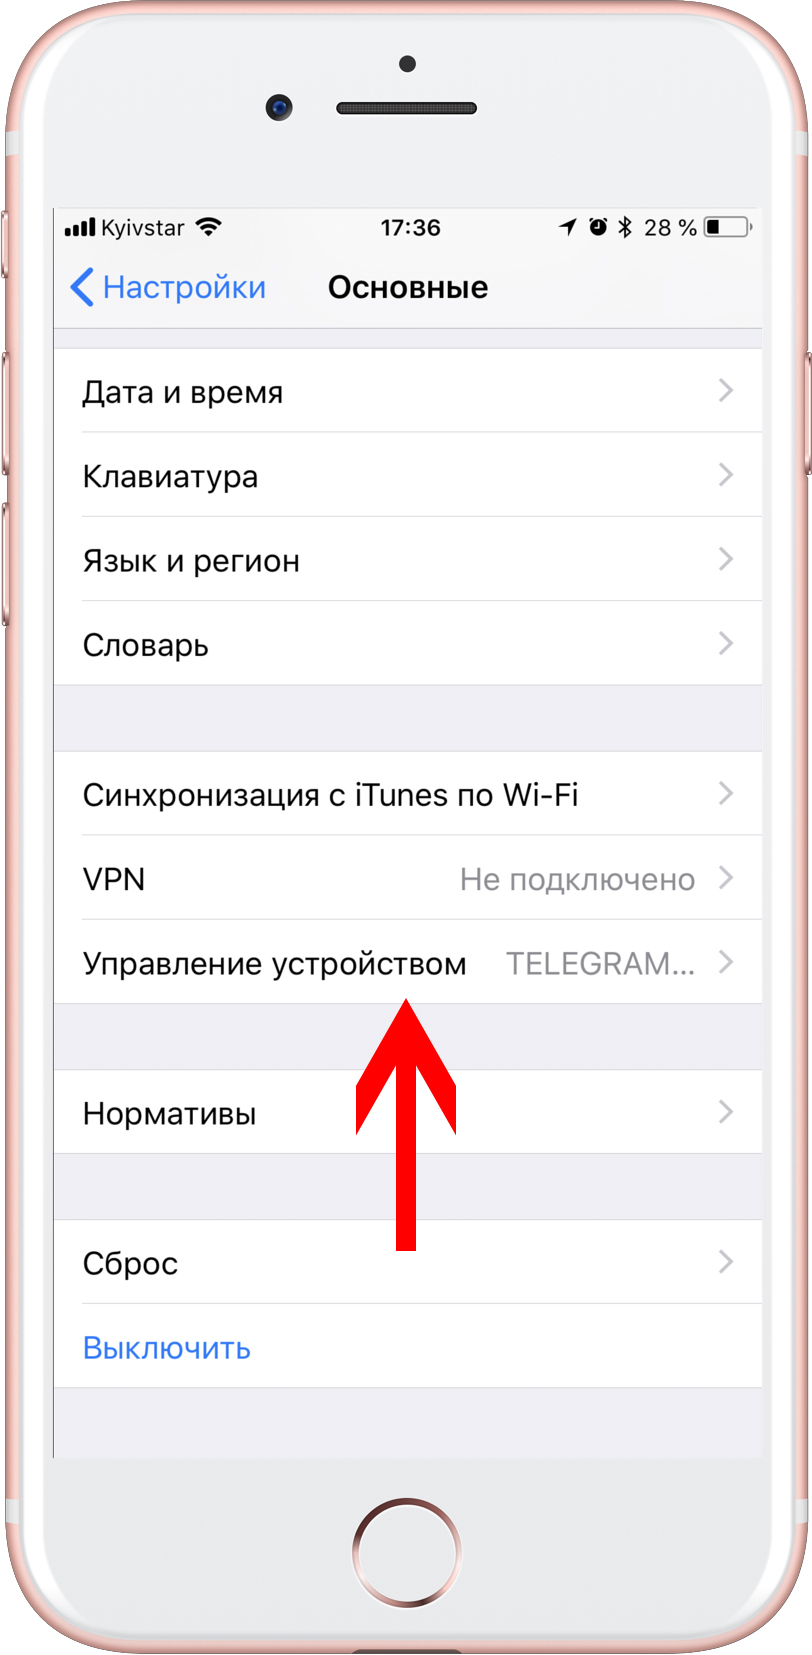 Обновить телеграмм на андроид до последней версии бесплатно на русском языке без регистрации как фото 107